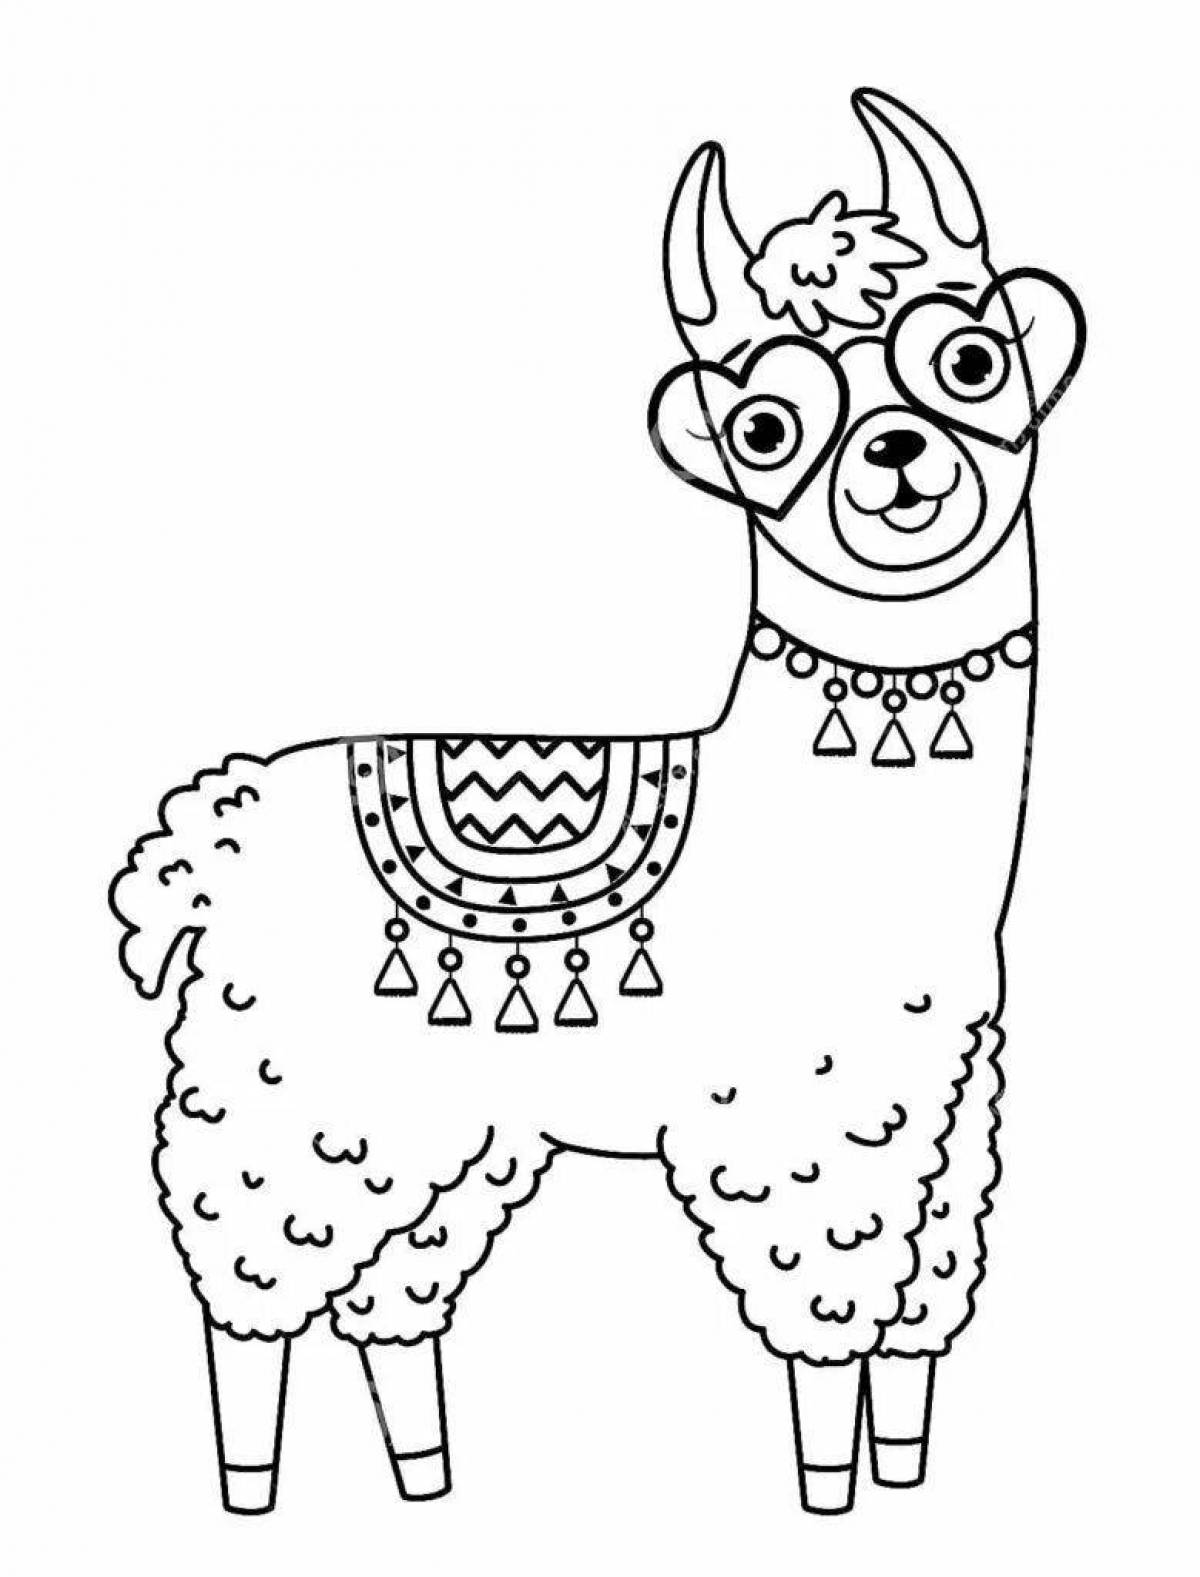 Bright cute llama coloring book